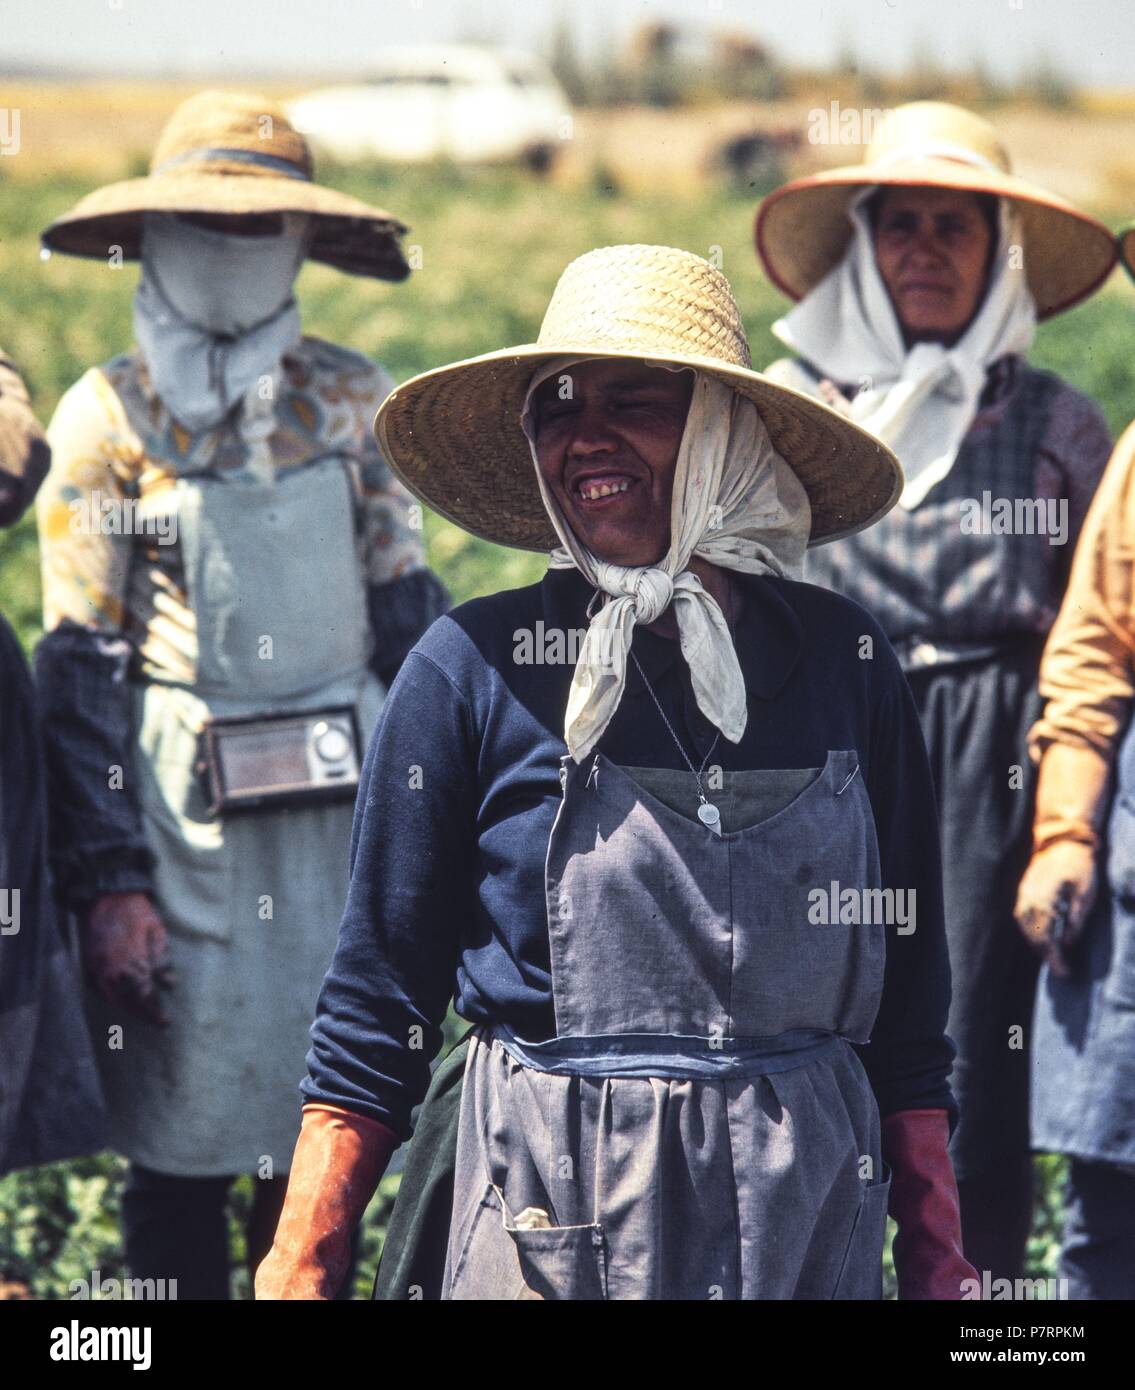 Campesinas en la recolección de la remolacha azucarera. Provincia de Ciudad Real. Años 70. Stock Photo